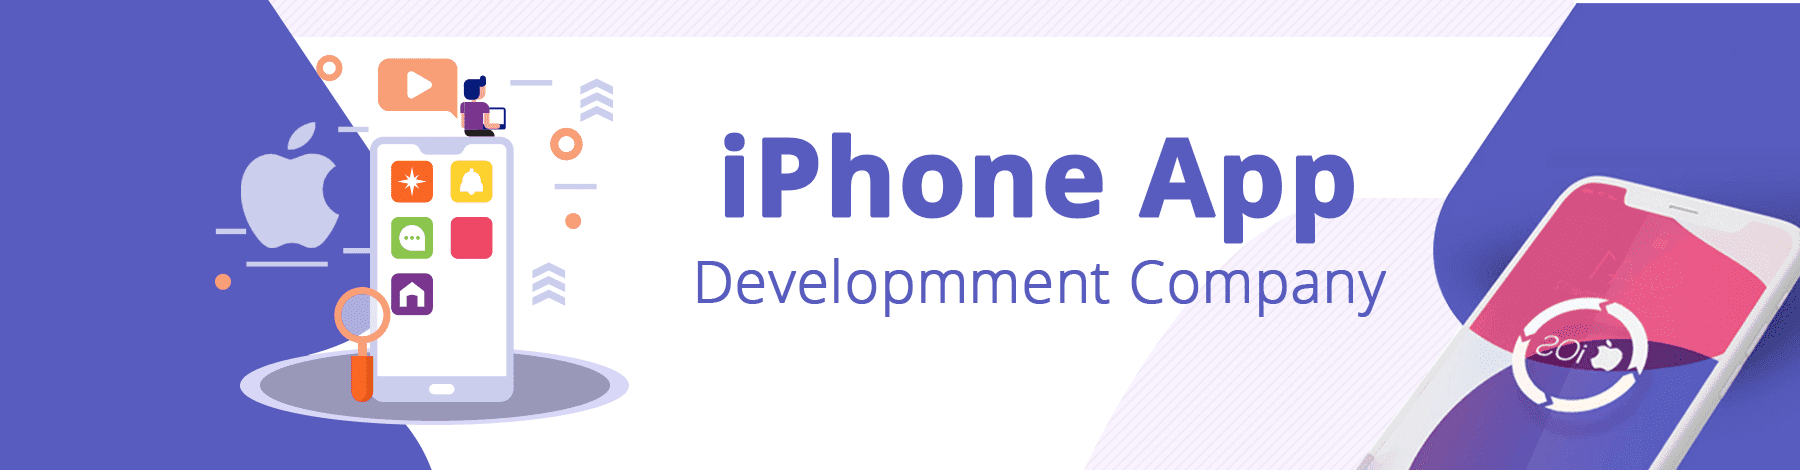 iPhone App Development company